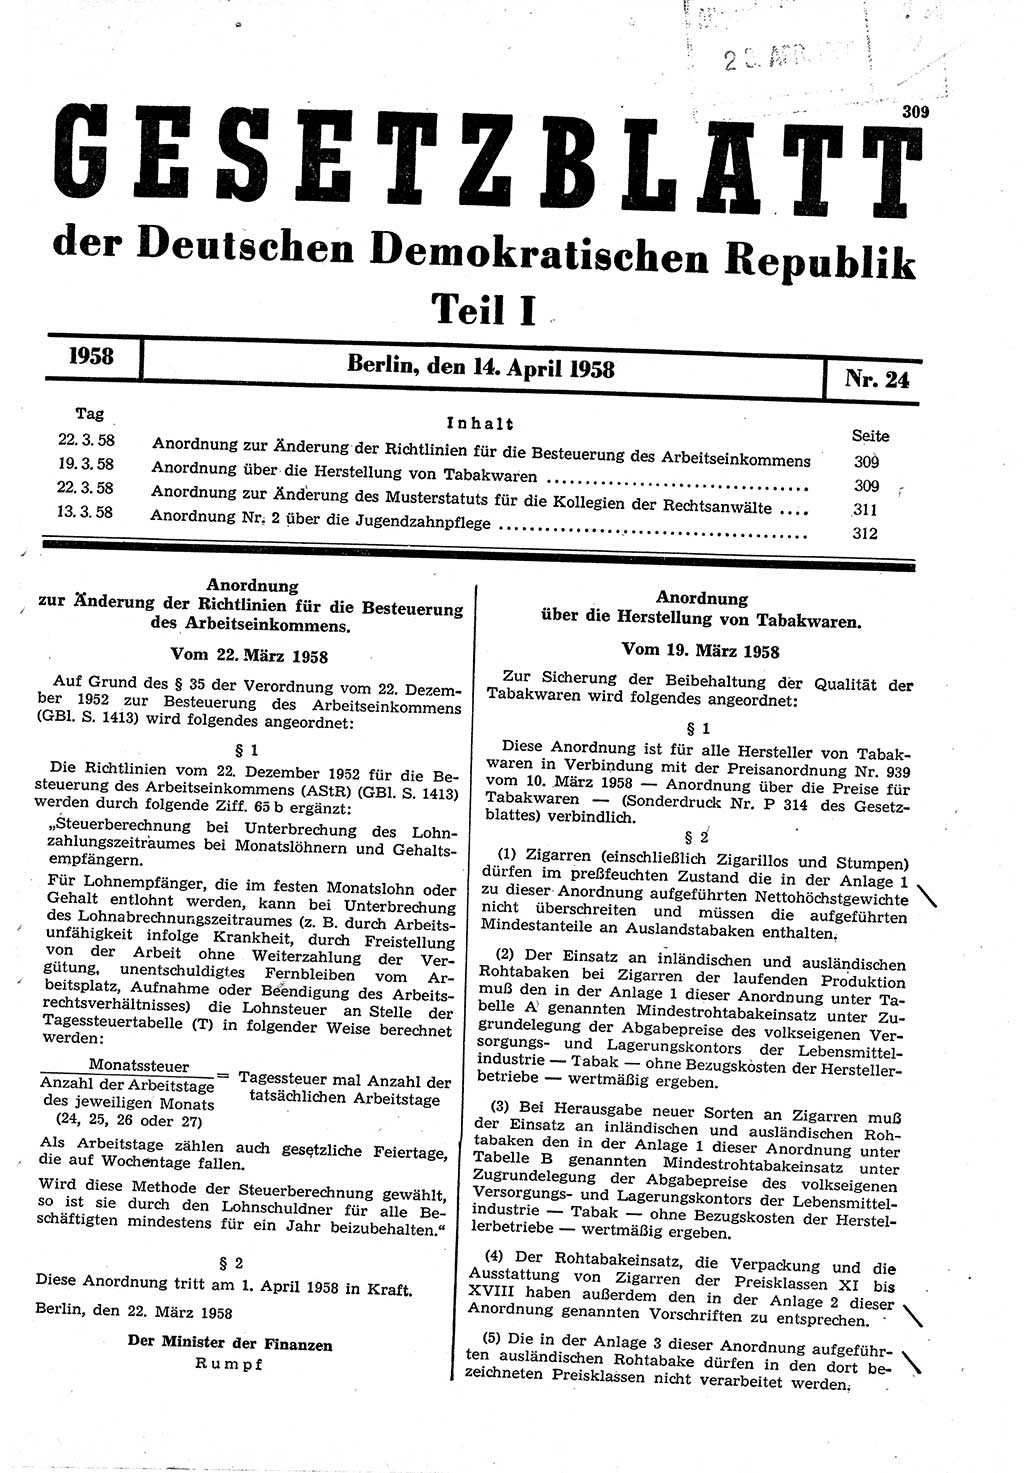 Gesetzblatt (GBl.) der Deutschen Demokratischen Republik (DDR) Teil Ⅰ 1958, Seite 309 (GBl. DDR Ⅰ 1958, S. 309)